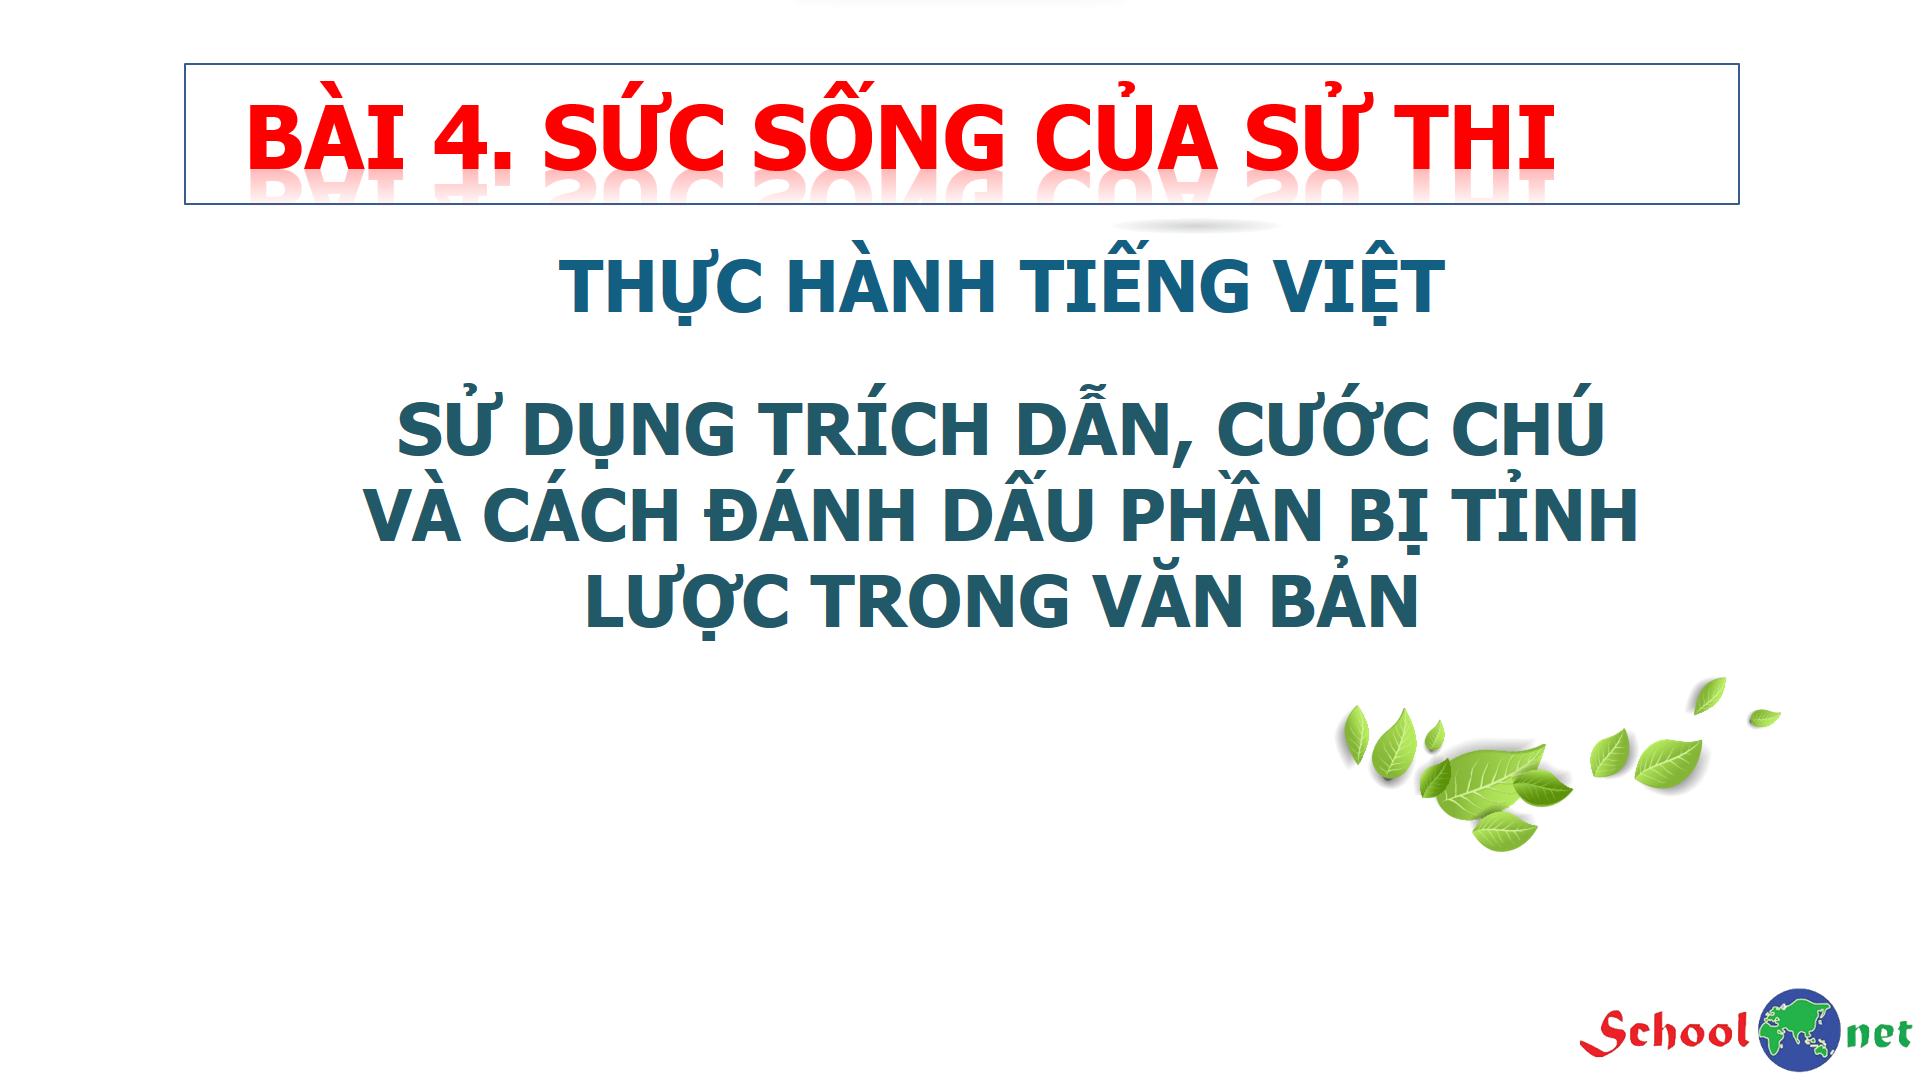 Bài 4: Thực hành tiếng Việt: Sử dụng trích dẫn, cước chú và cách đánh dấu phần bị tinh lược trong văn bản - Bộ sách Kết nối tri thức với cuộc sống